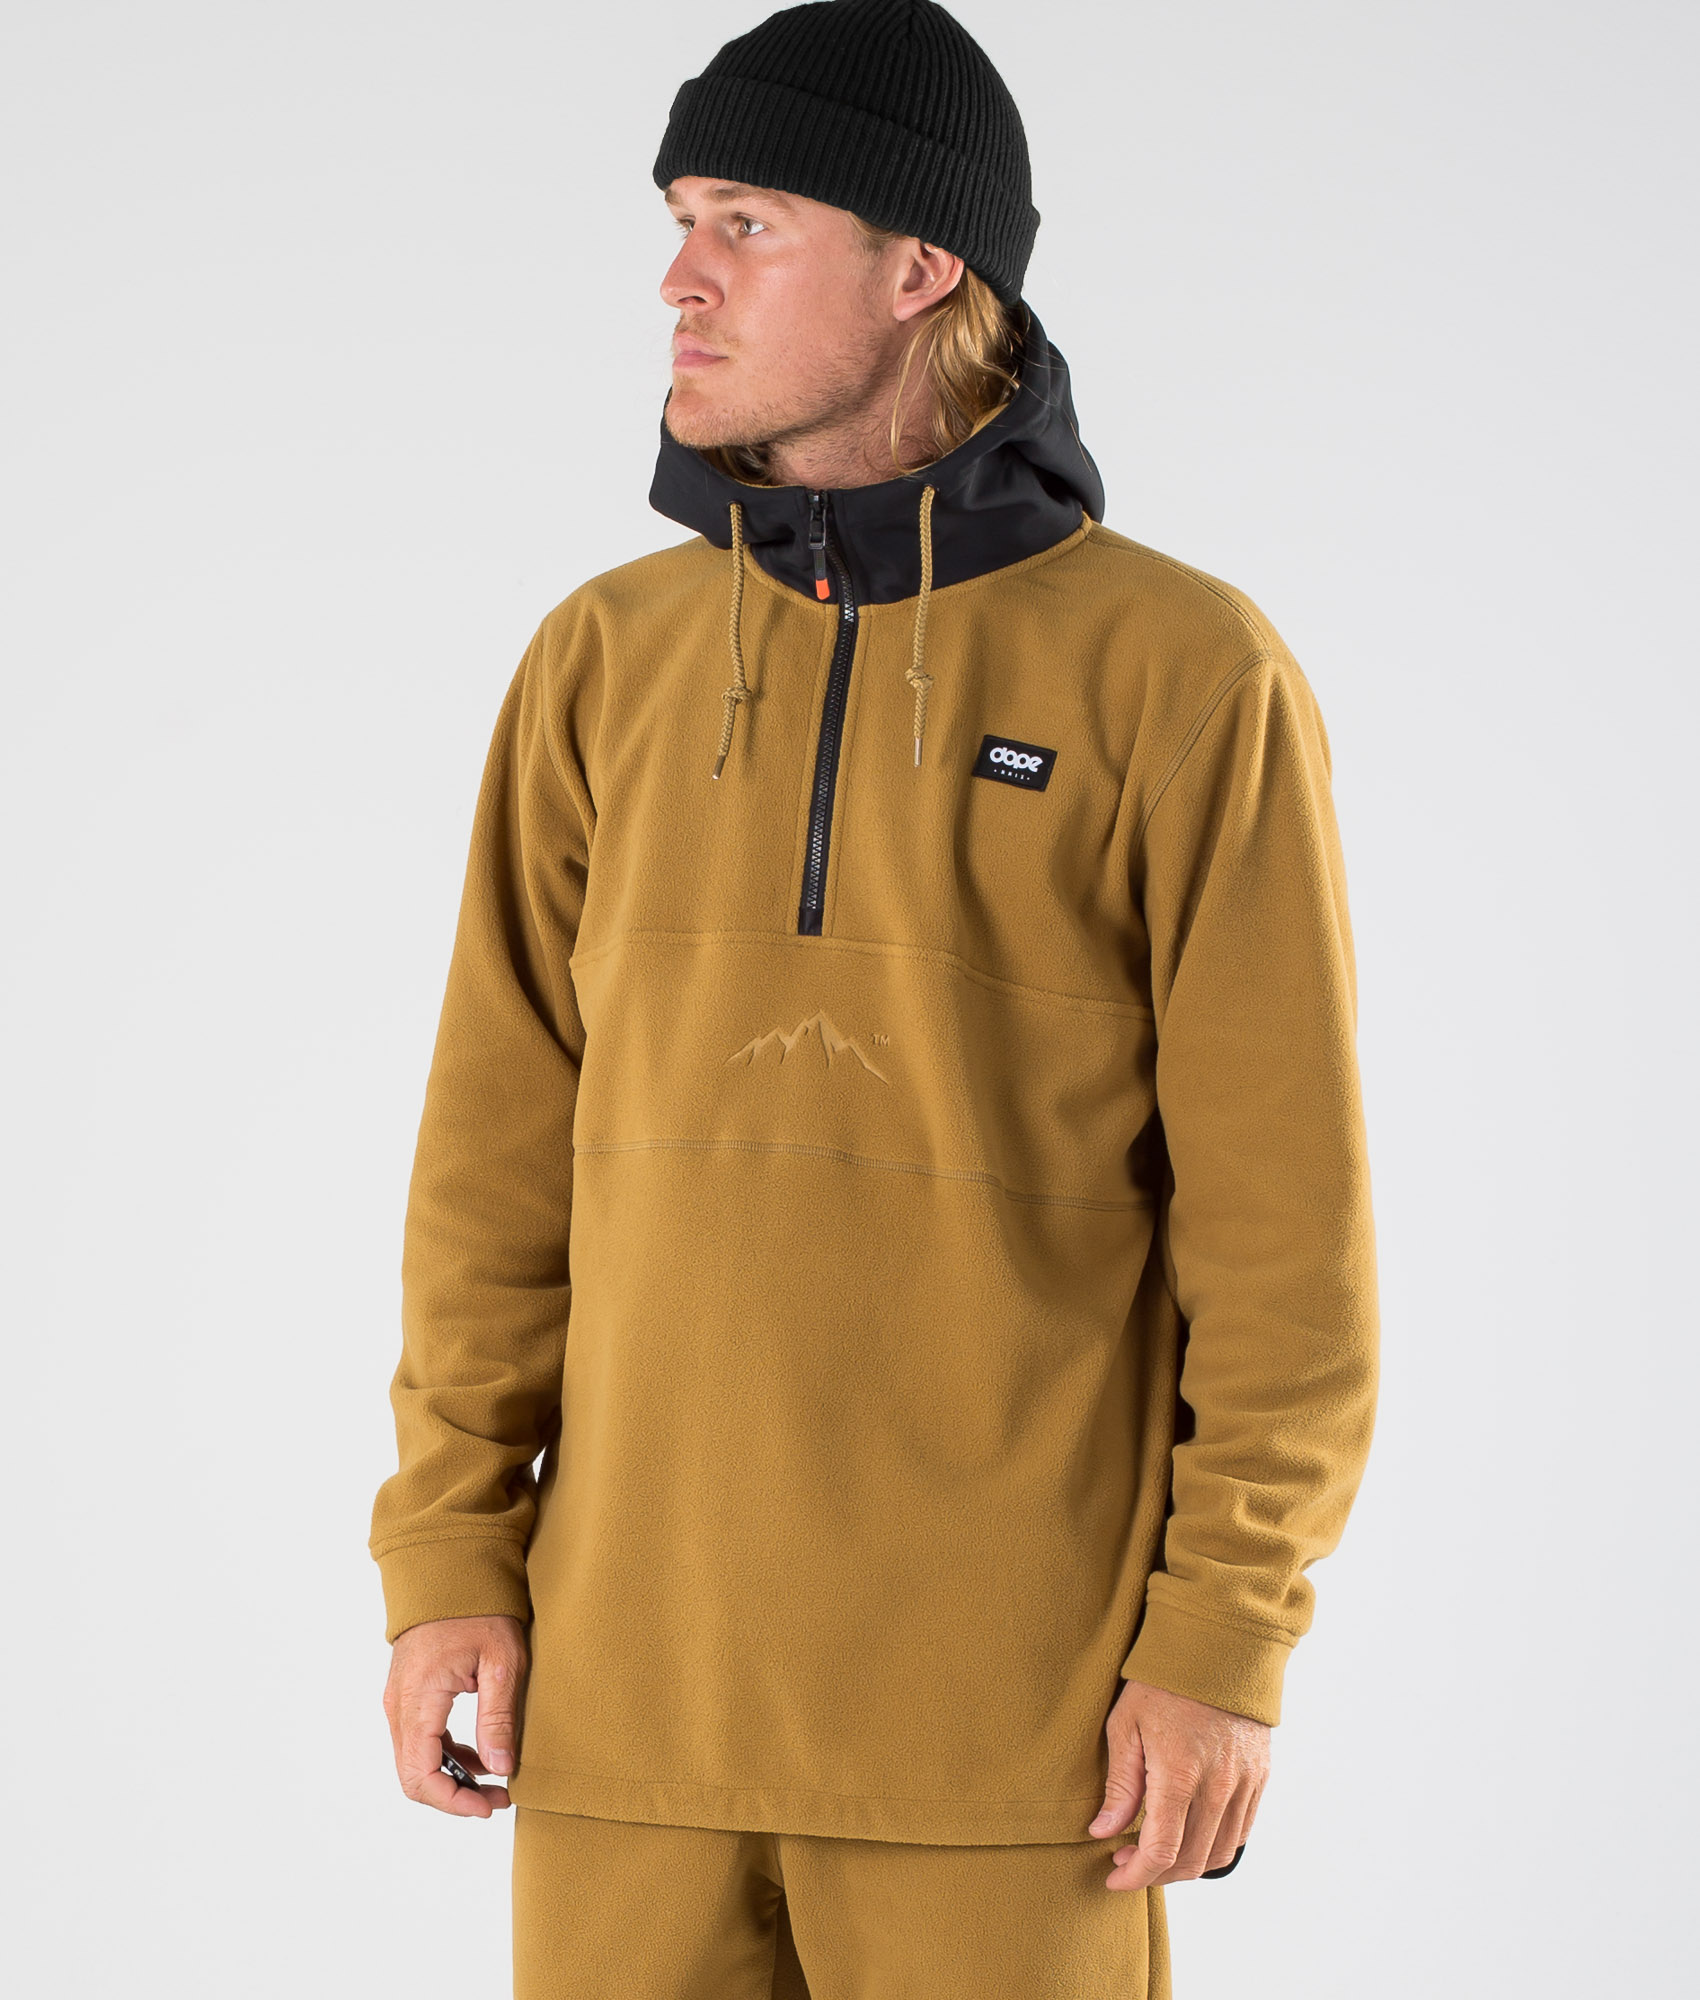 PROTEST Snowboard Fleece Jacke ADAM Zip Fleece 2021 kit Pullover 